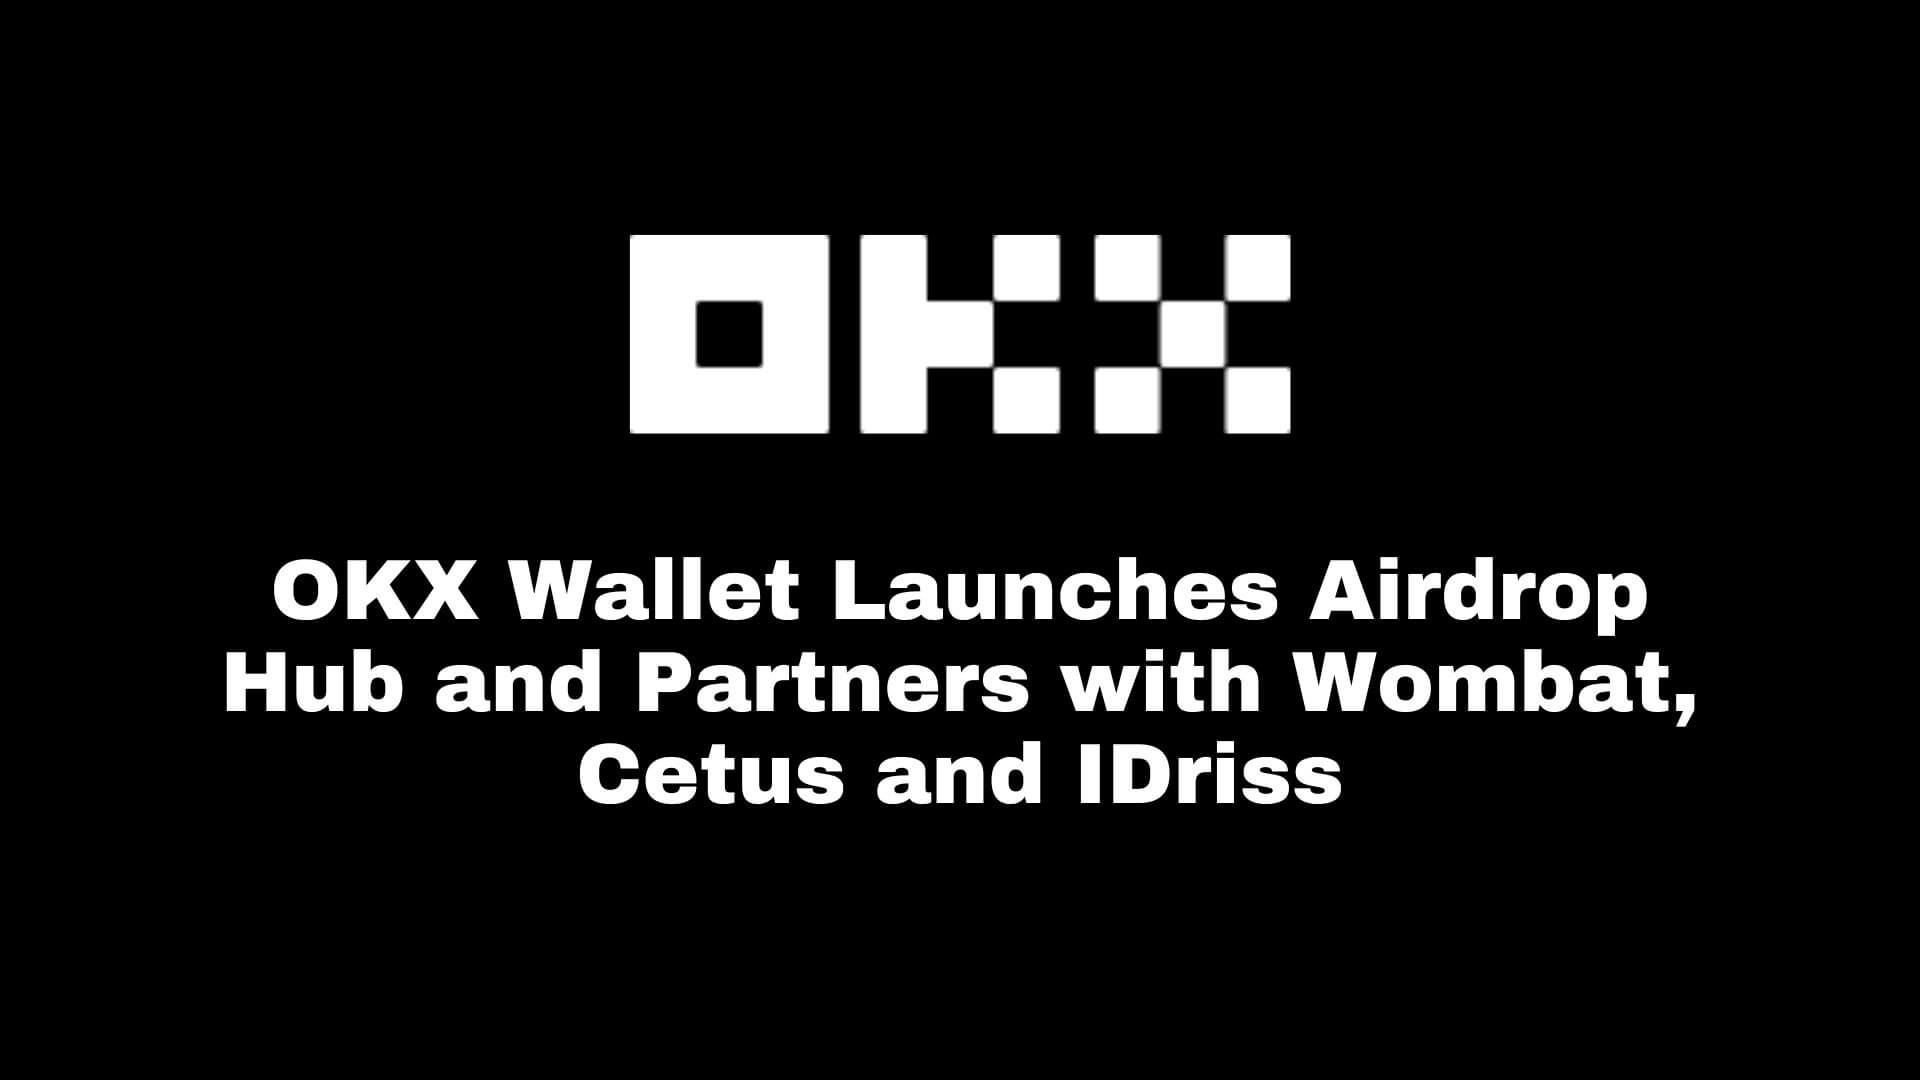 फ़्लैश समाचार: ओकेएक्स वॉलेट ने एयरड्रॉप हब लॉन्च किया और वॉम्बैट, सेटस और आईड्रिस के साथ साझेदारी की